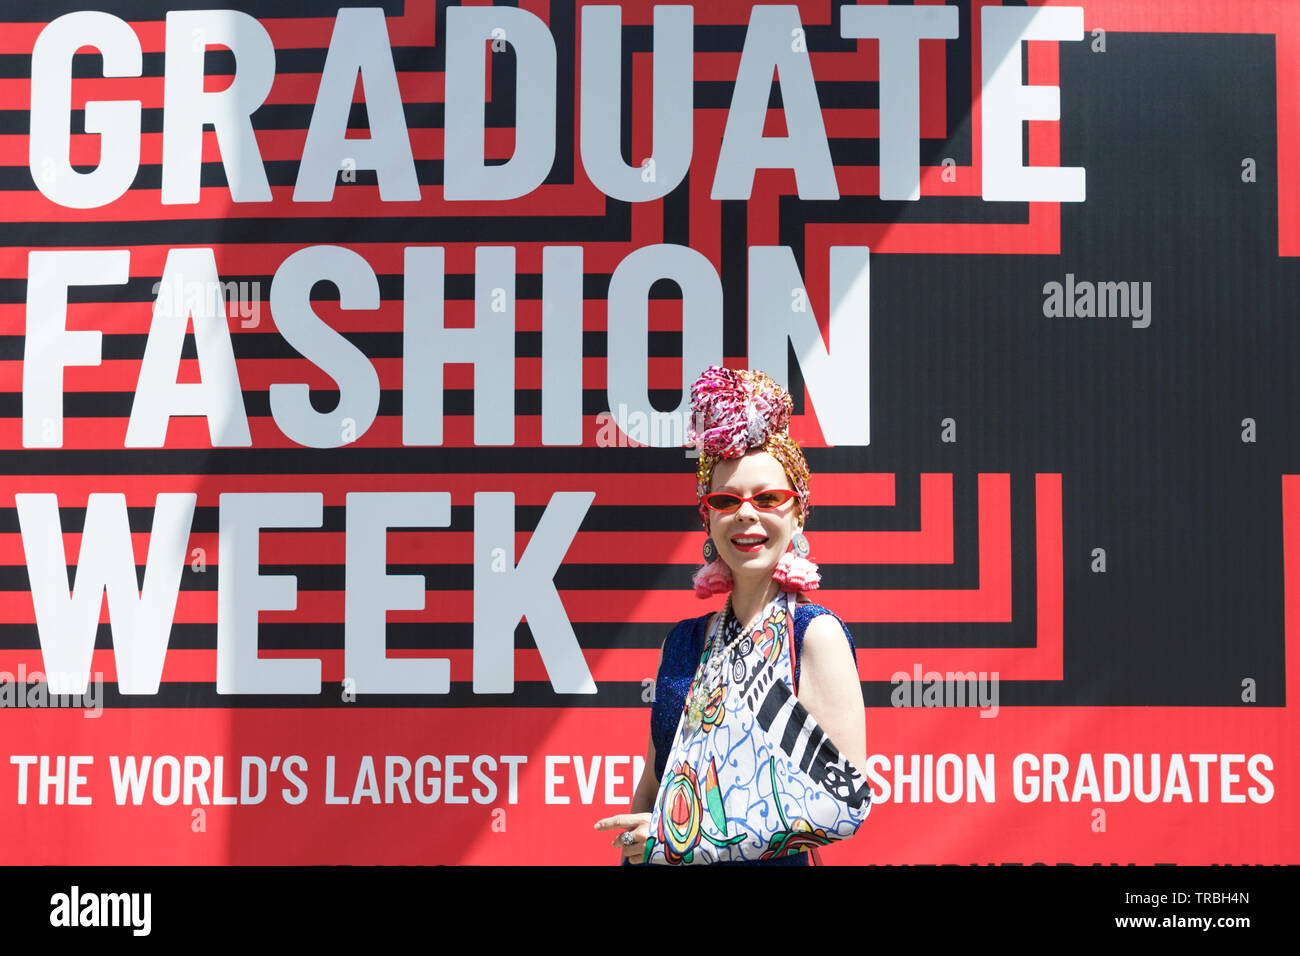 Graduate Fashion week, Londres, Royaume-Uni. Défilé de la semaine de la mode. Banque D'Images